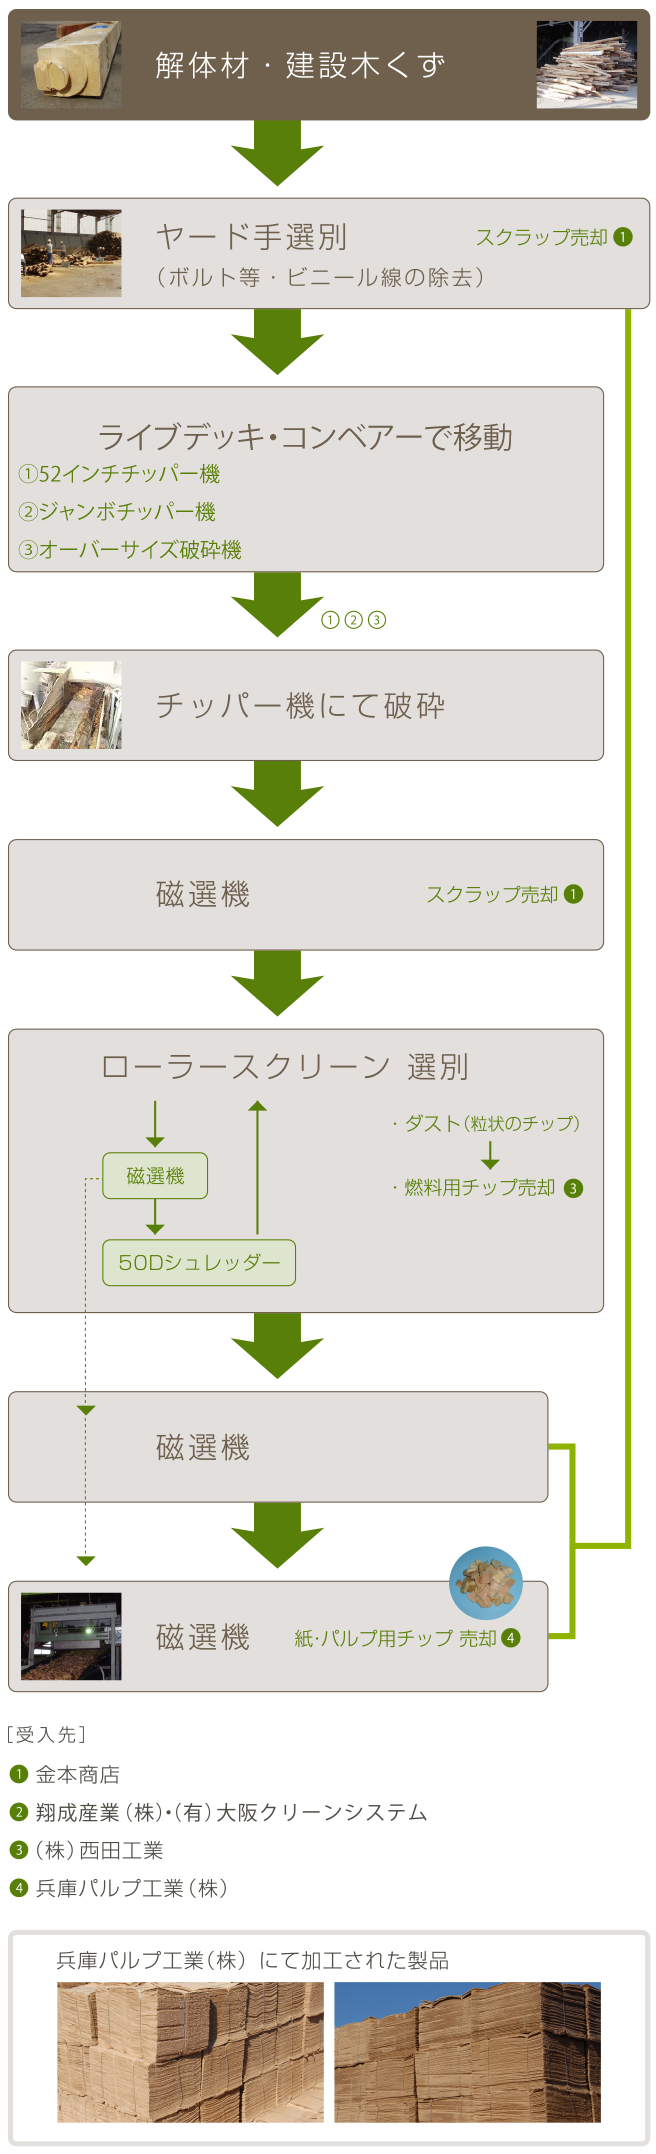 関西チップ工業株式会社処理工程図